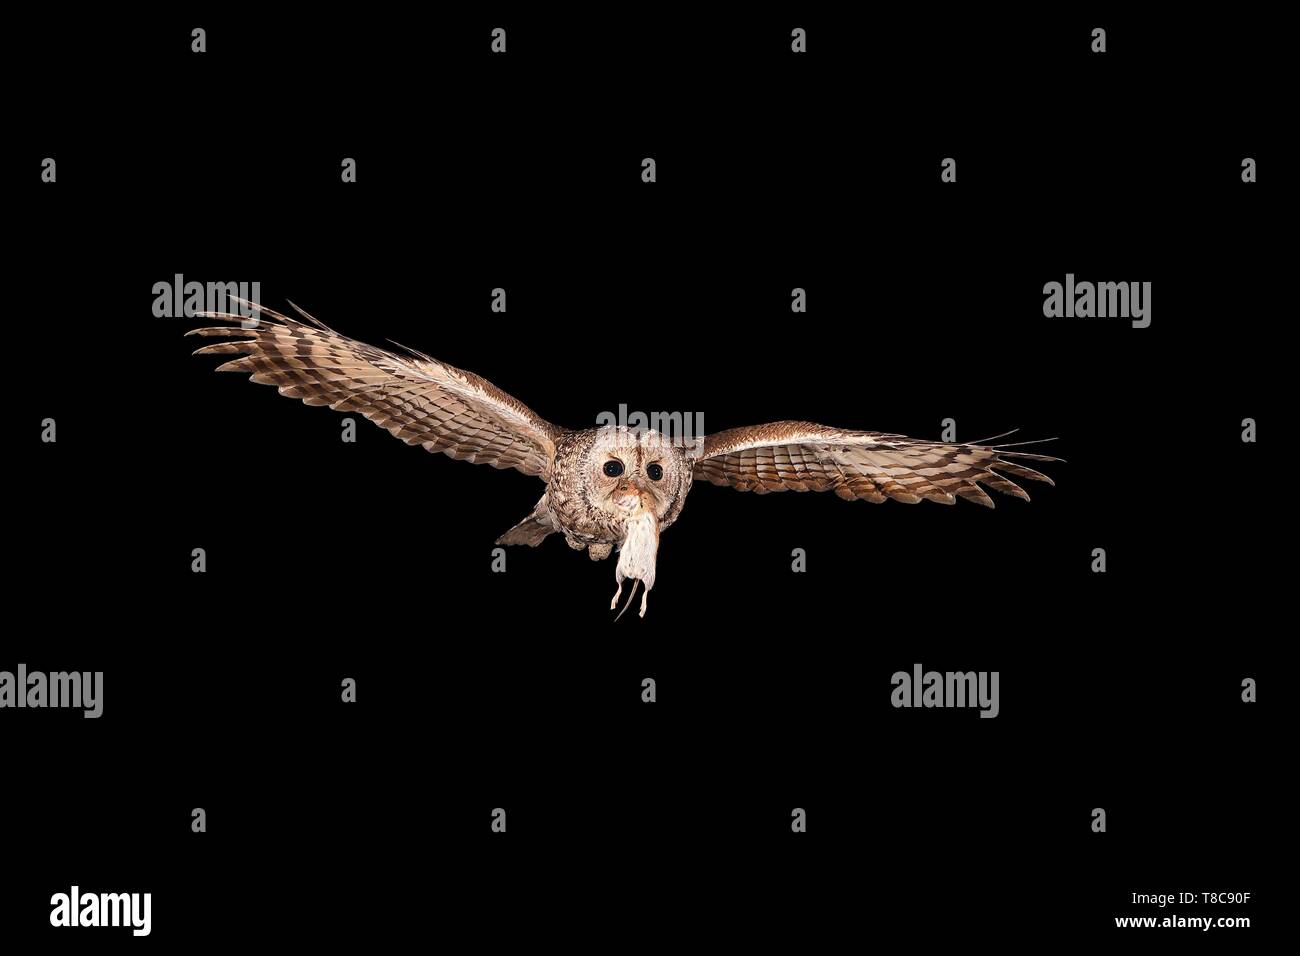 Allocco (Strix aluco) vola di notte con una banca vole (Clethrionomys glareolus) nel suo becco, Renania settentrionale-Vestfalia, Germania Foto Stock